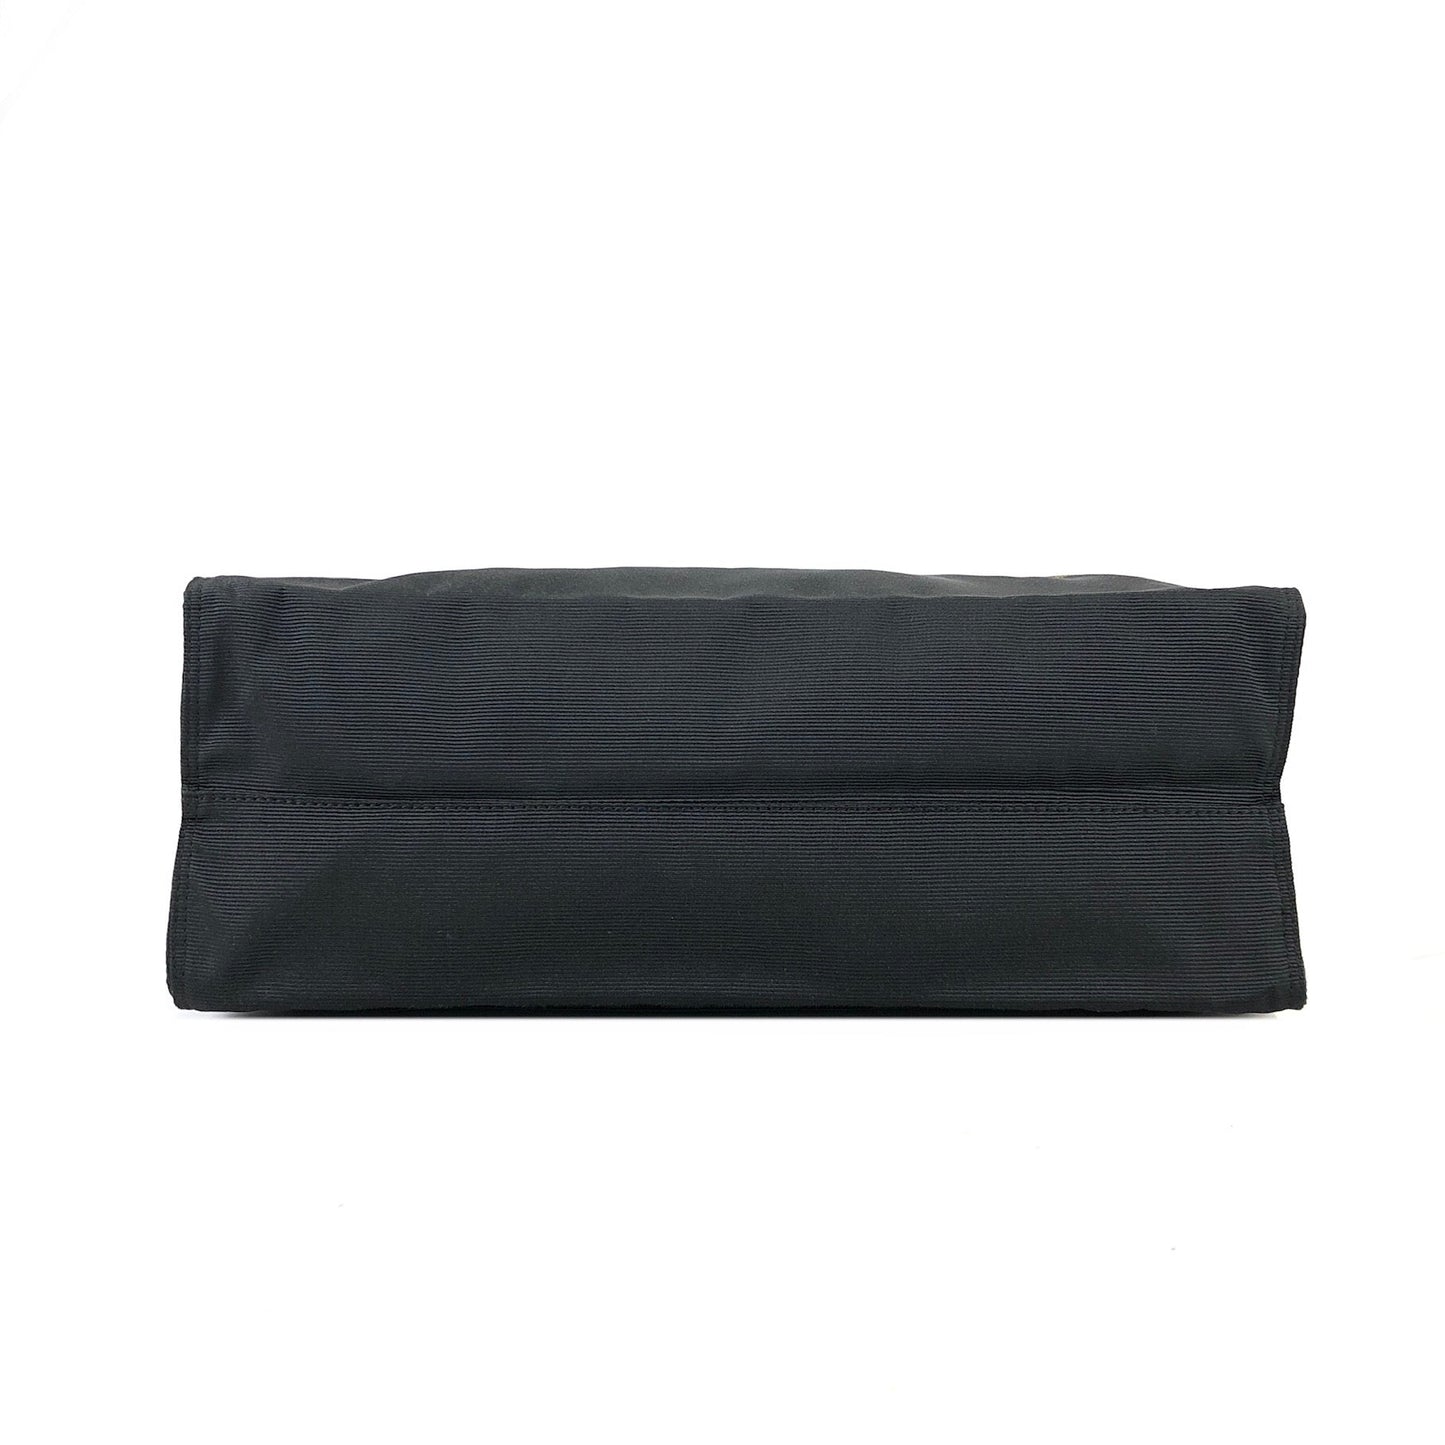 FENDI Logo Nylon Handbag Black 4a26r3